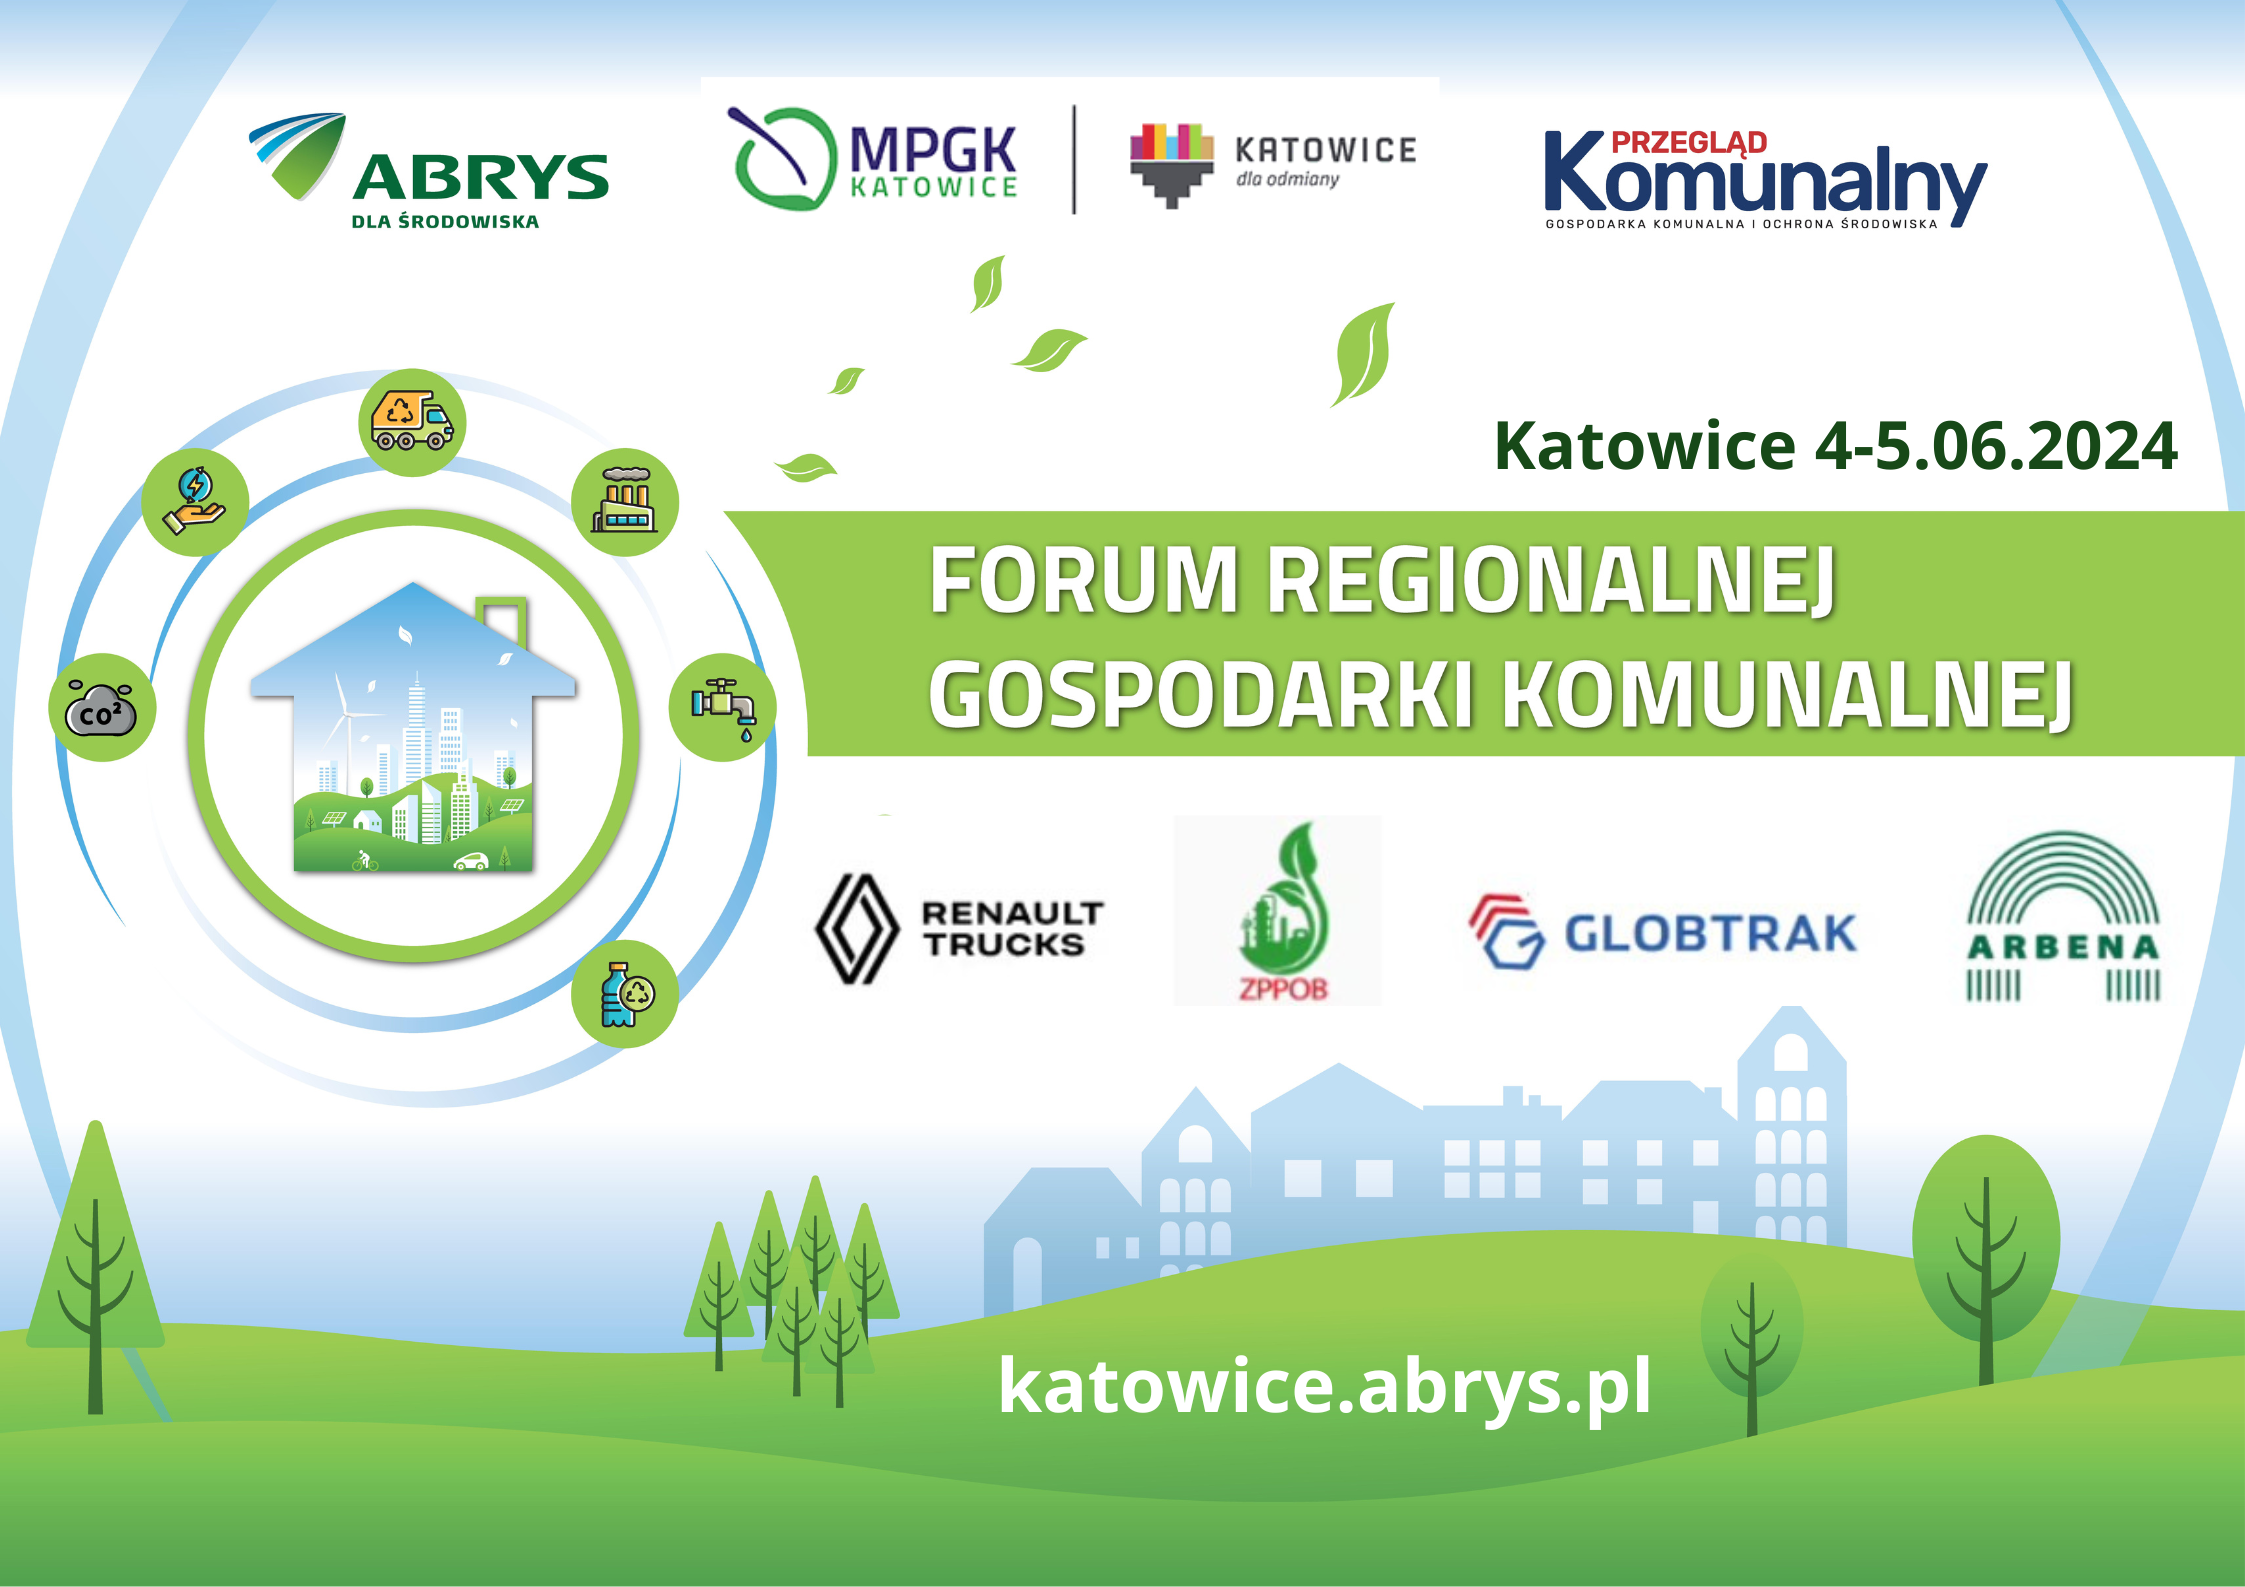 Forum regionalnej gospodarki komunalnej, 4-5 czerwca 2024 r., Katowice